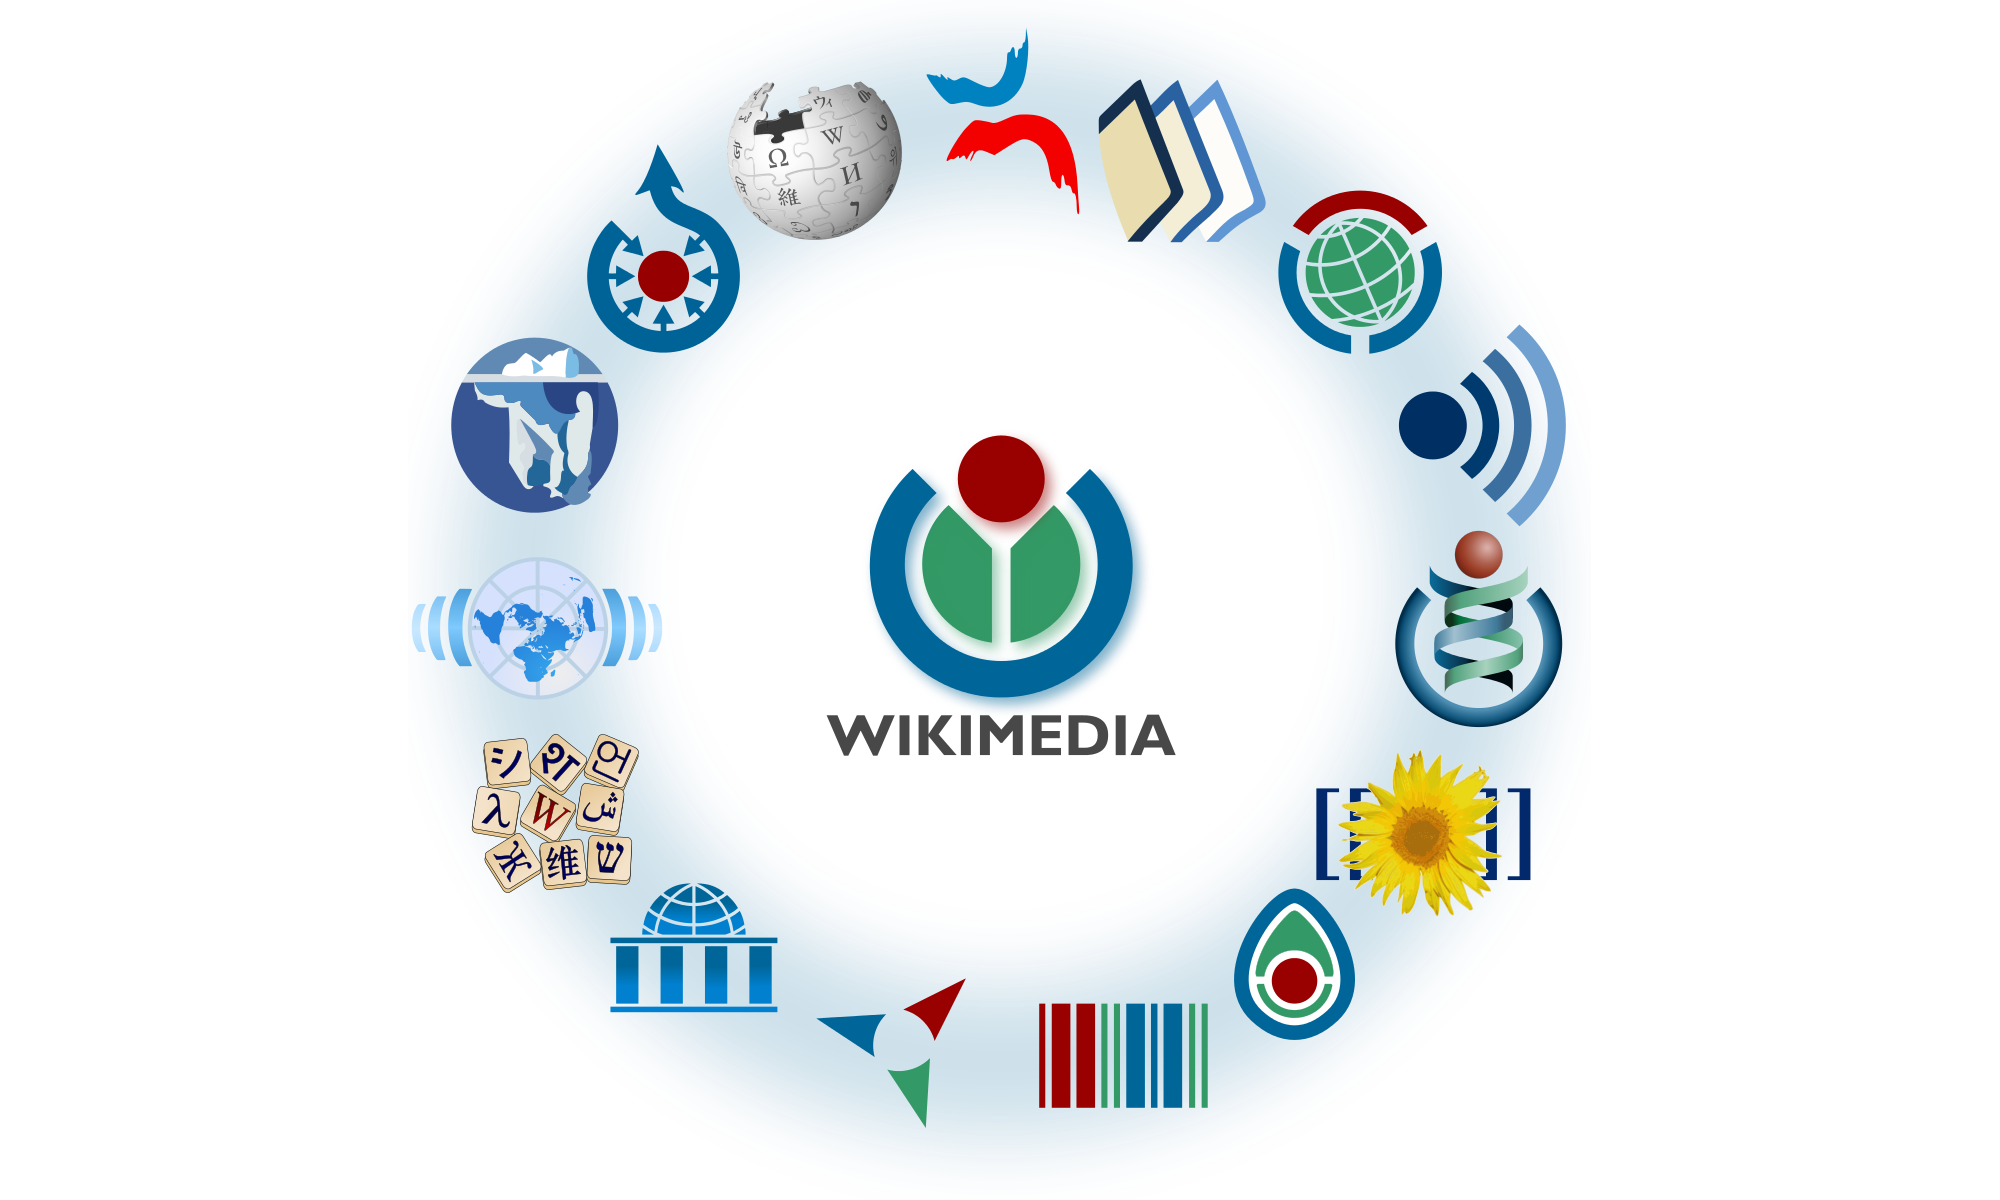 Wikimedia célèbre le million d'articles créés grâce à la traduction